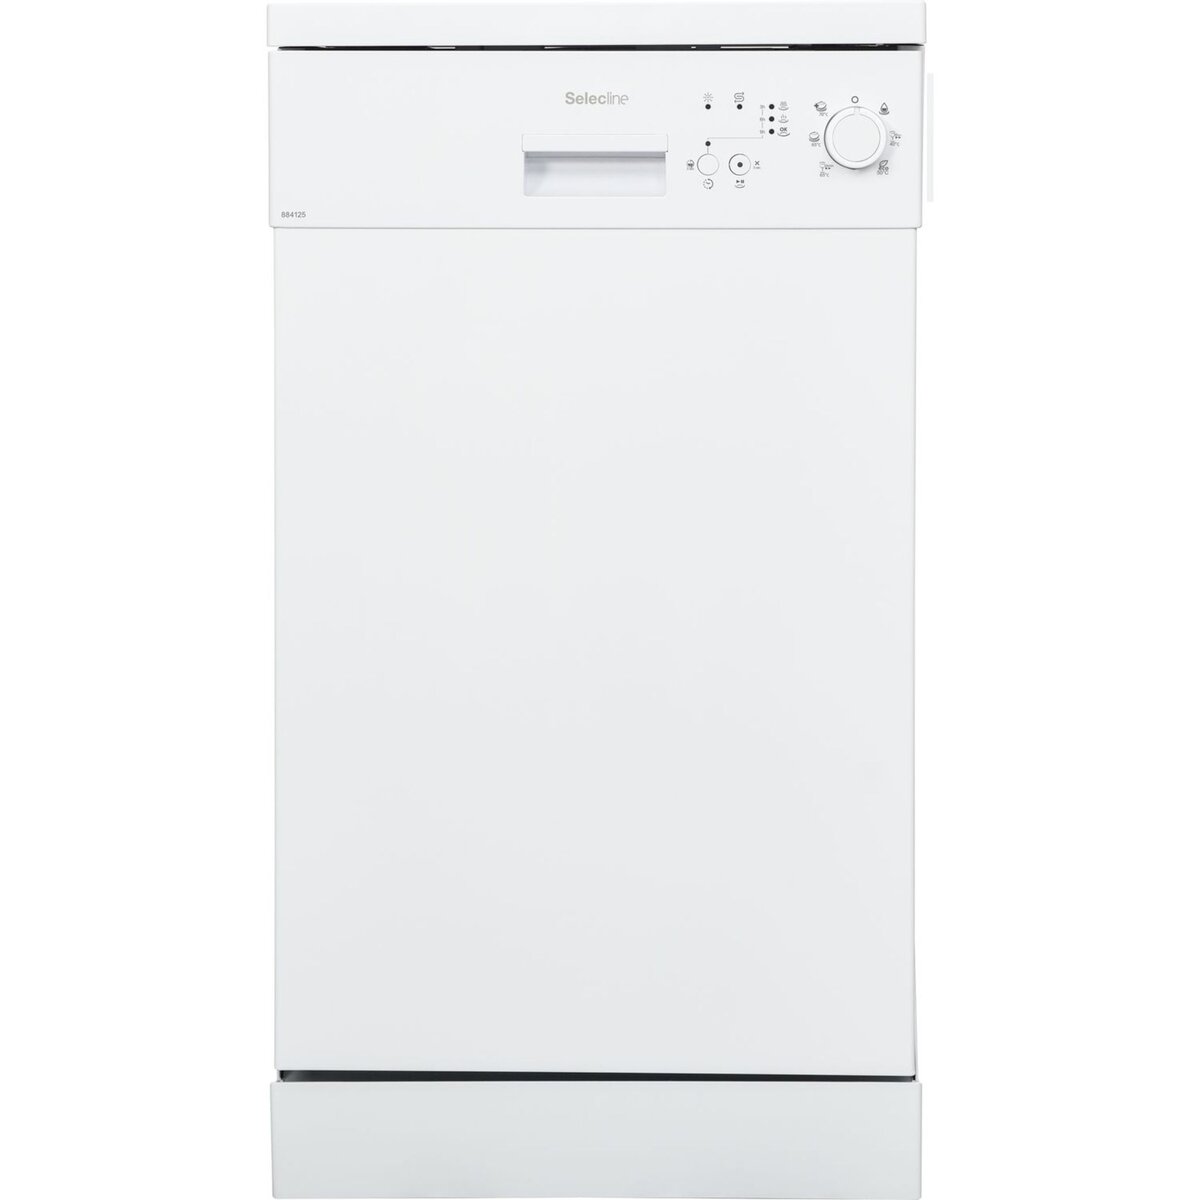 SELECLINE Lave vaisselle non encastrable C1549 / 884125, 10 couverts, 45 cm, 49 dB, 6 programmes